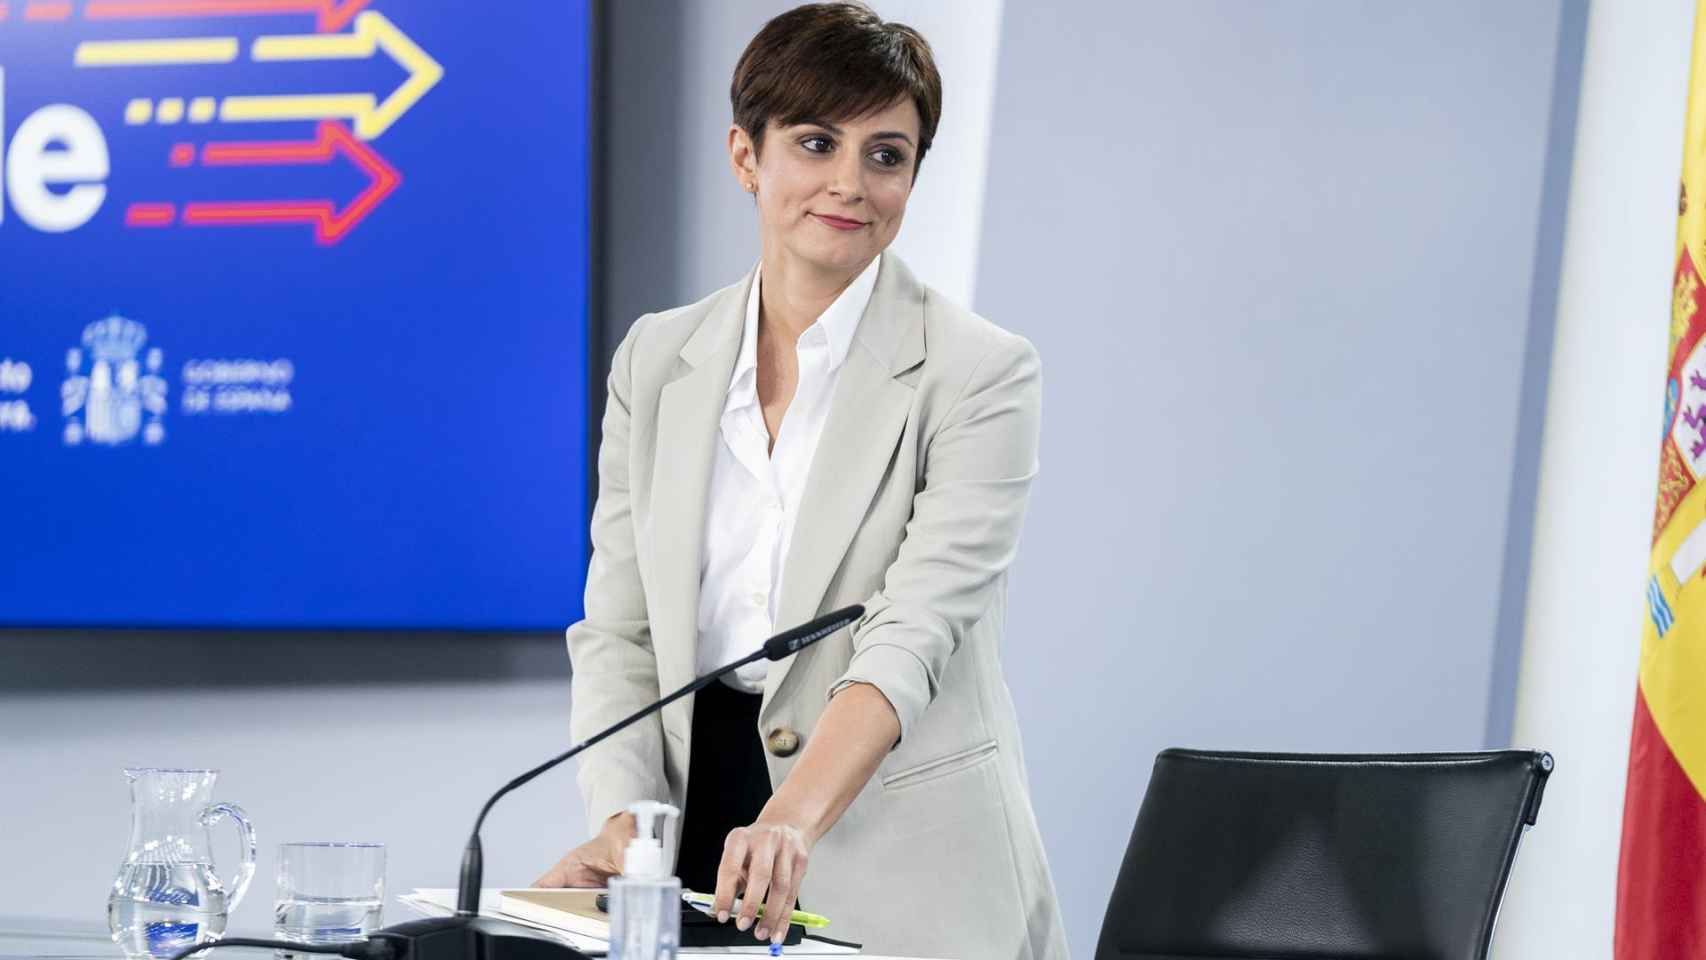 La ciudadrealeña Isabel Rodríguez, portavoz del Gobierno de España, en una imagen reciente de Europa Press